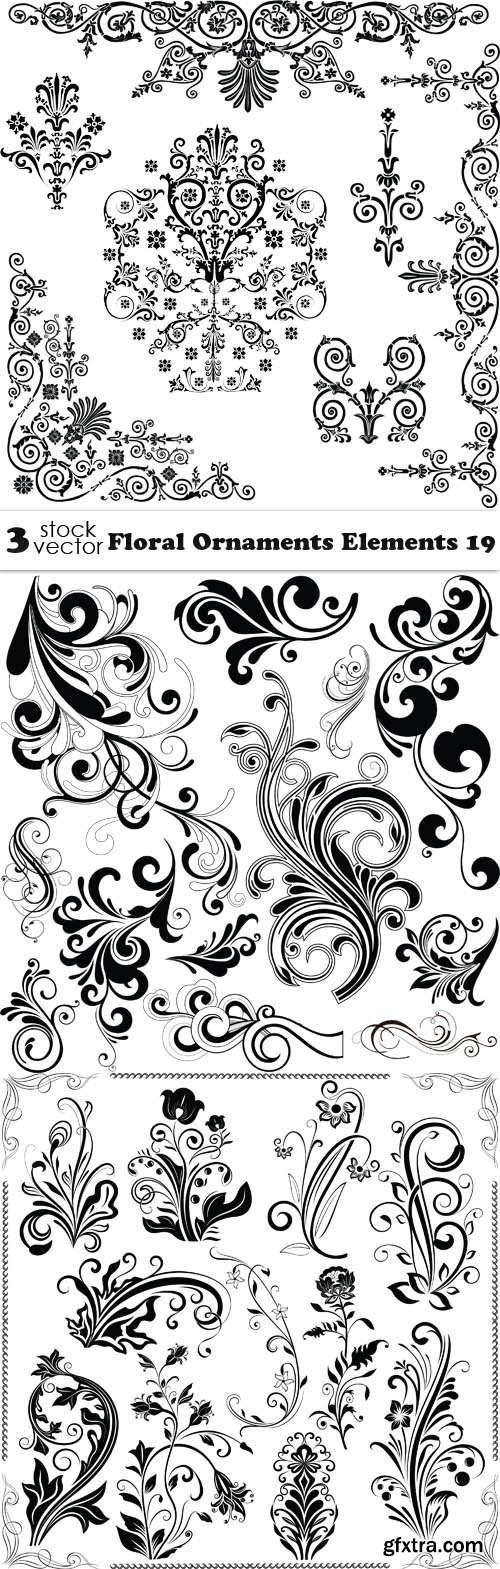 Vectors - Floral Ornaments Elements 19